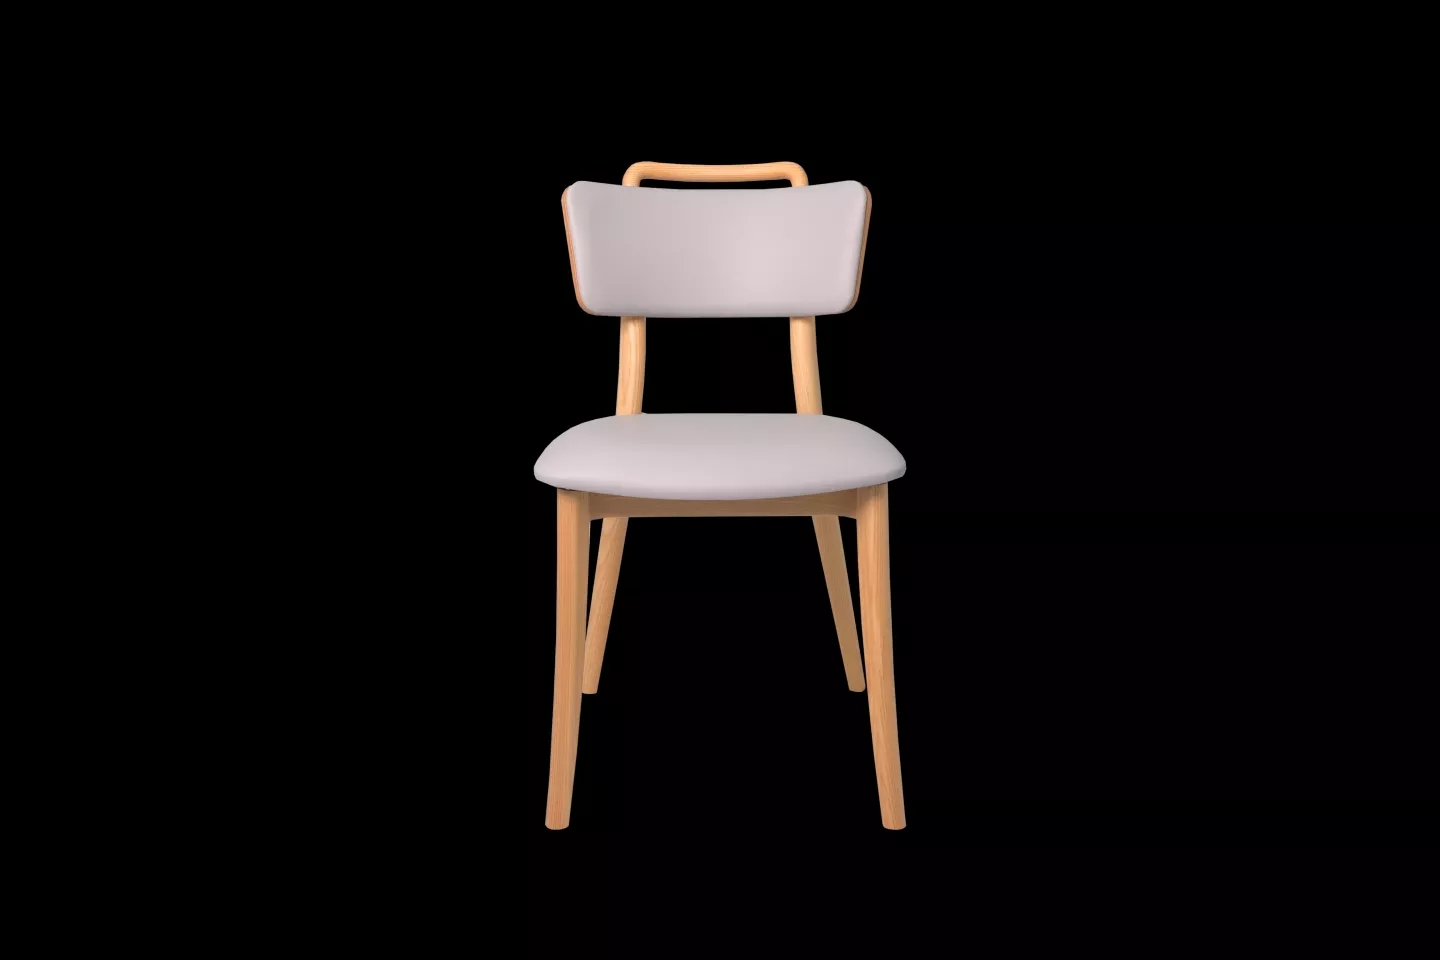 台灣製造訂製餐椅正拍實拍照,椅背貼心設計小把手方便移動餐椅